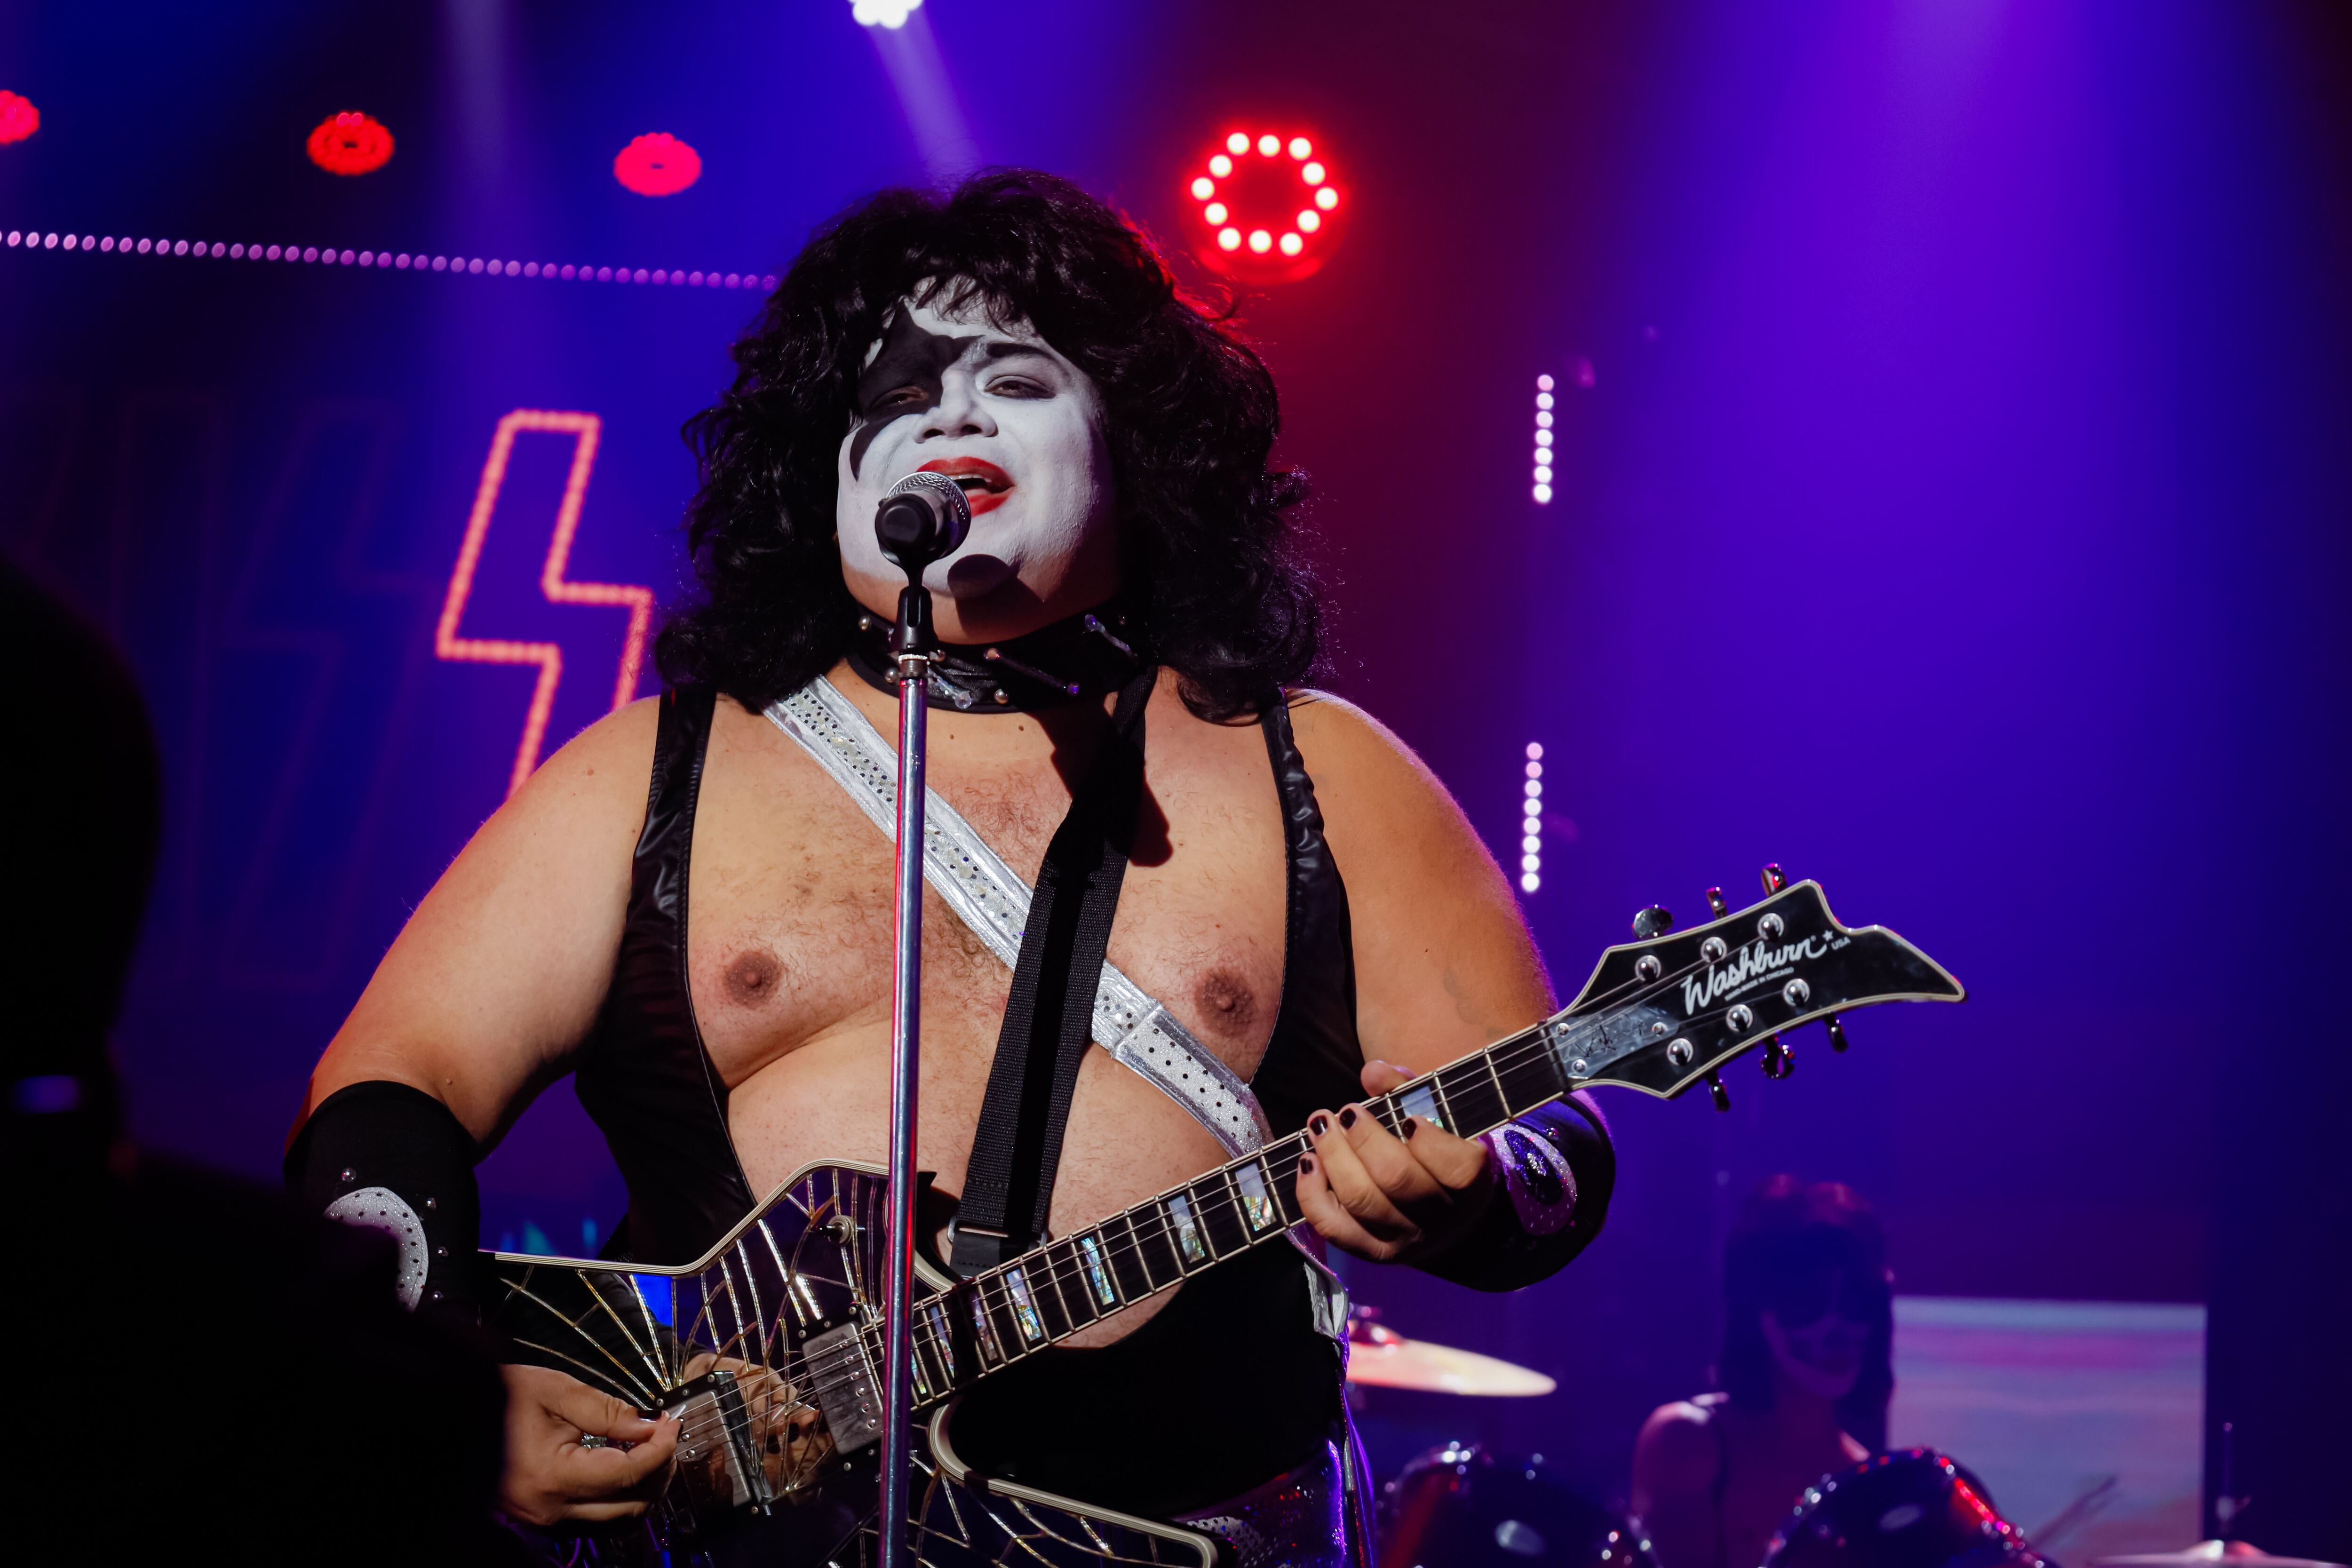 Gustavo Gamboa encarnó a Paul Stanley del grupo Kiss, en la décima gala de 'Tu cara me suena'. Foto: Cortesía Teletica